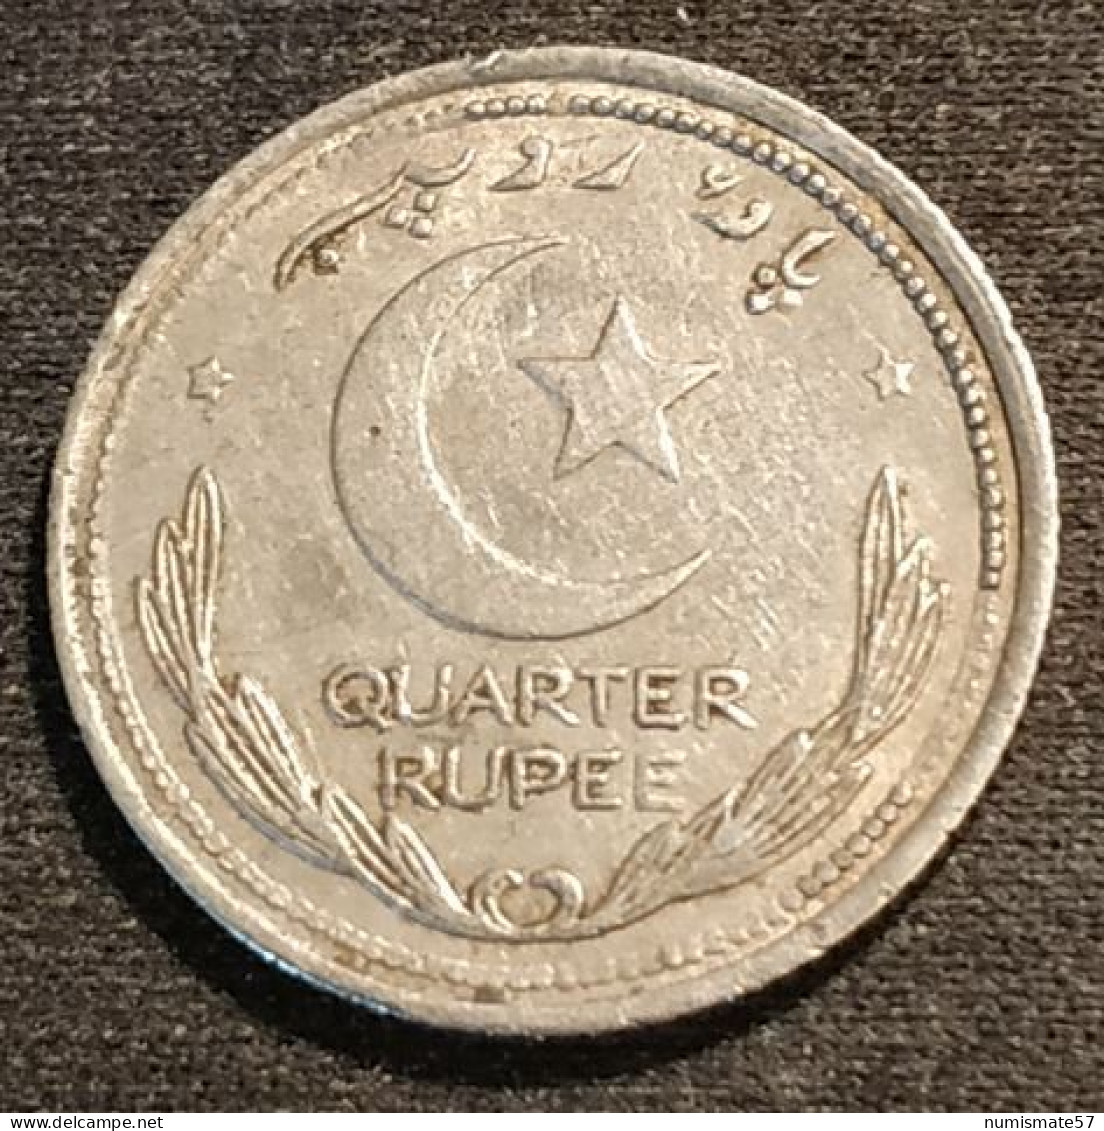 PAKISTAN - ¼ - 1/4 - QUARTER RUPEE 1948 - KM 5 - ( ROUPIE ) - Pakistan